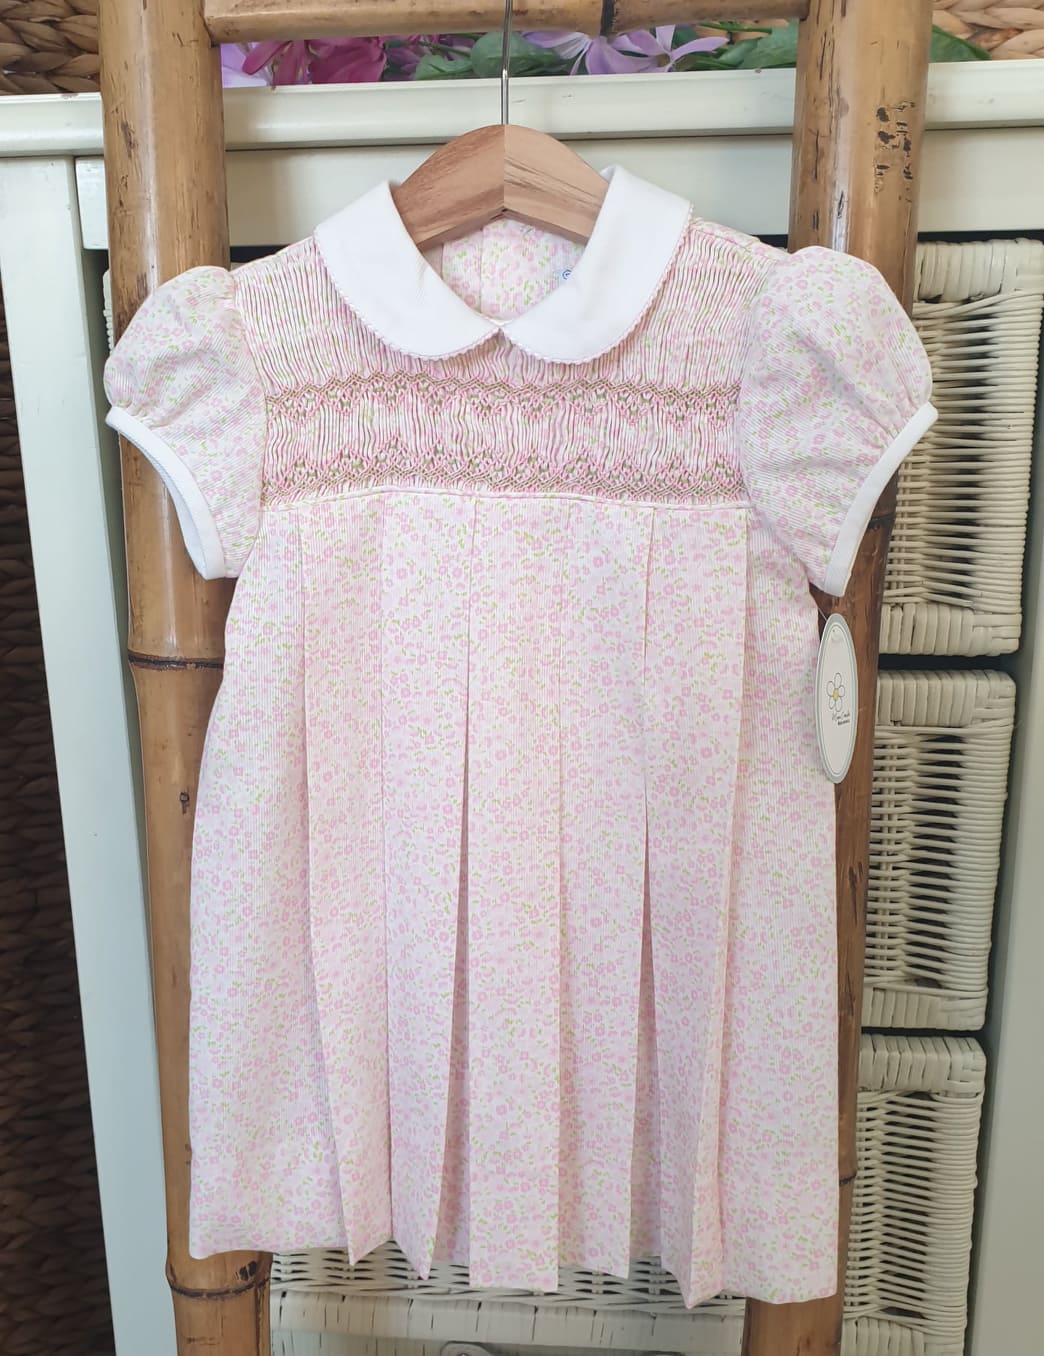 A Vestido niña punto inglés R180898 liberty rosa - Tienda moda infantil  online | María Corrales